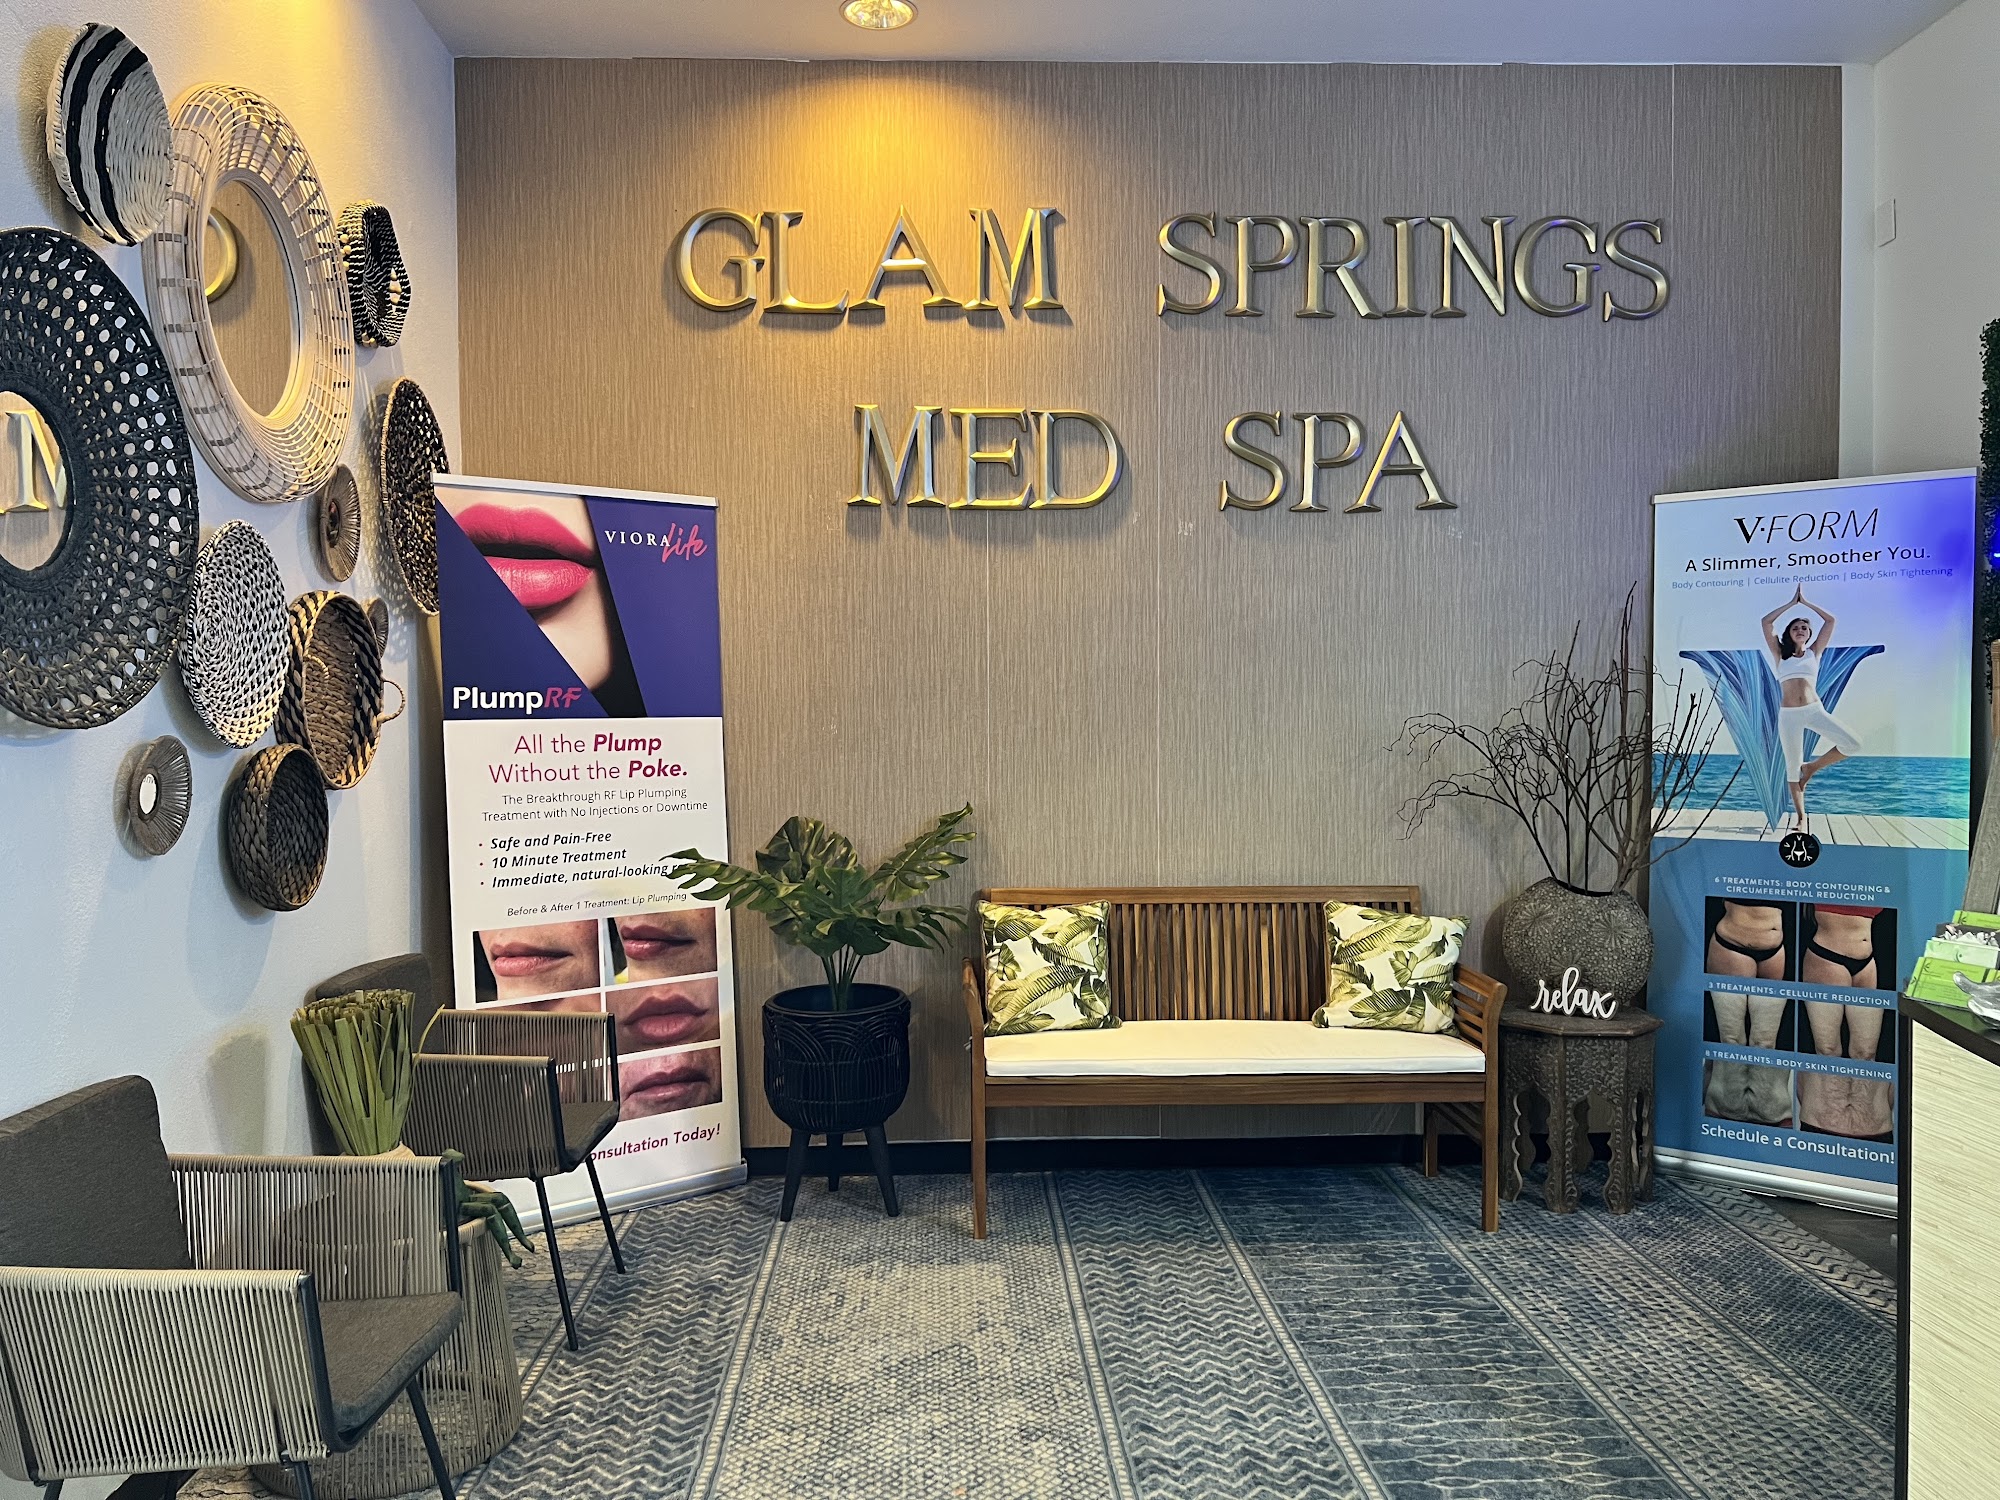 Glam Springs Aesthetic Beauty & Wellness Med Spa